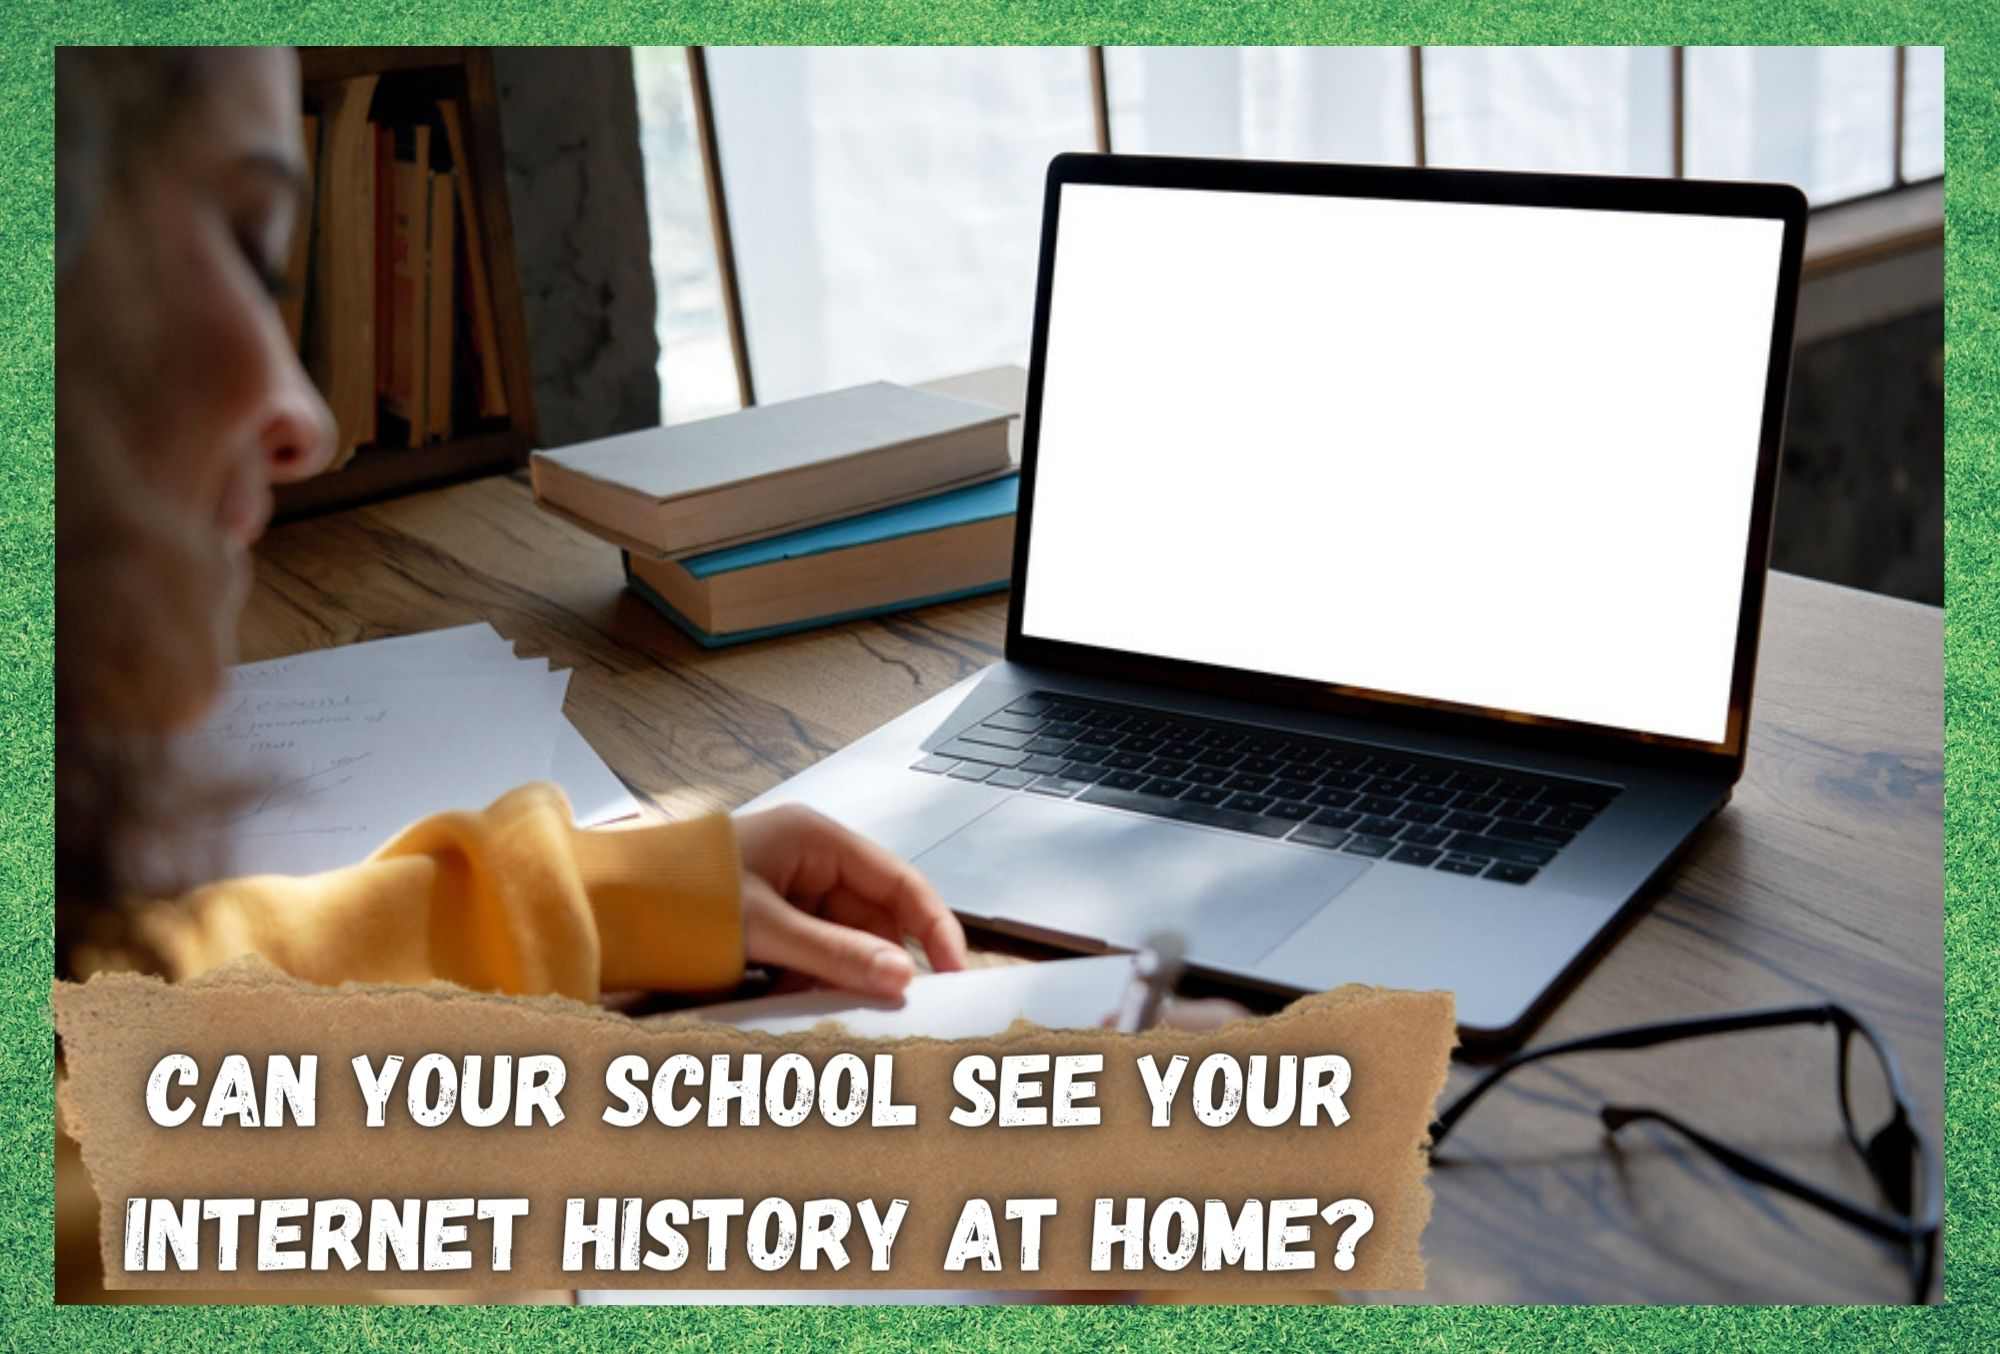 Дали вашето училиште може да ја види вашата интернет историја дома?